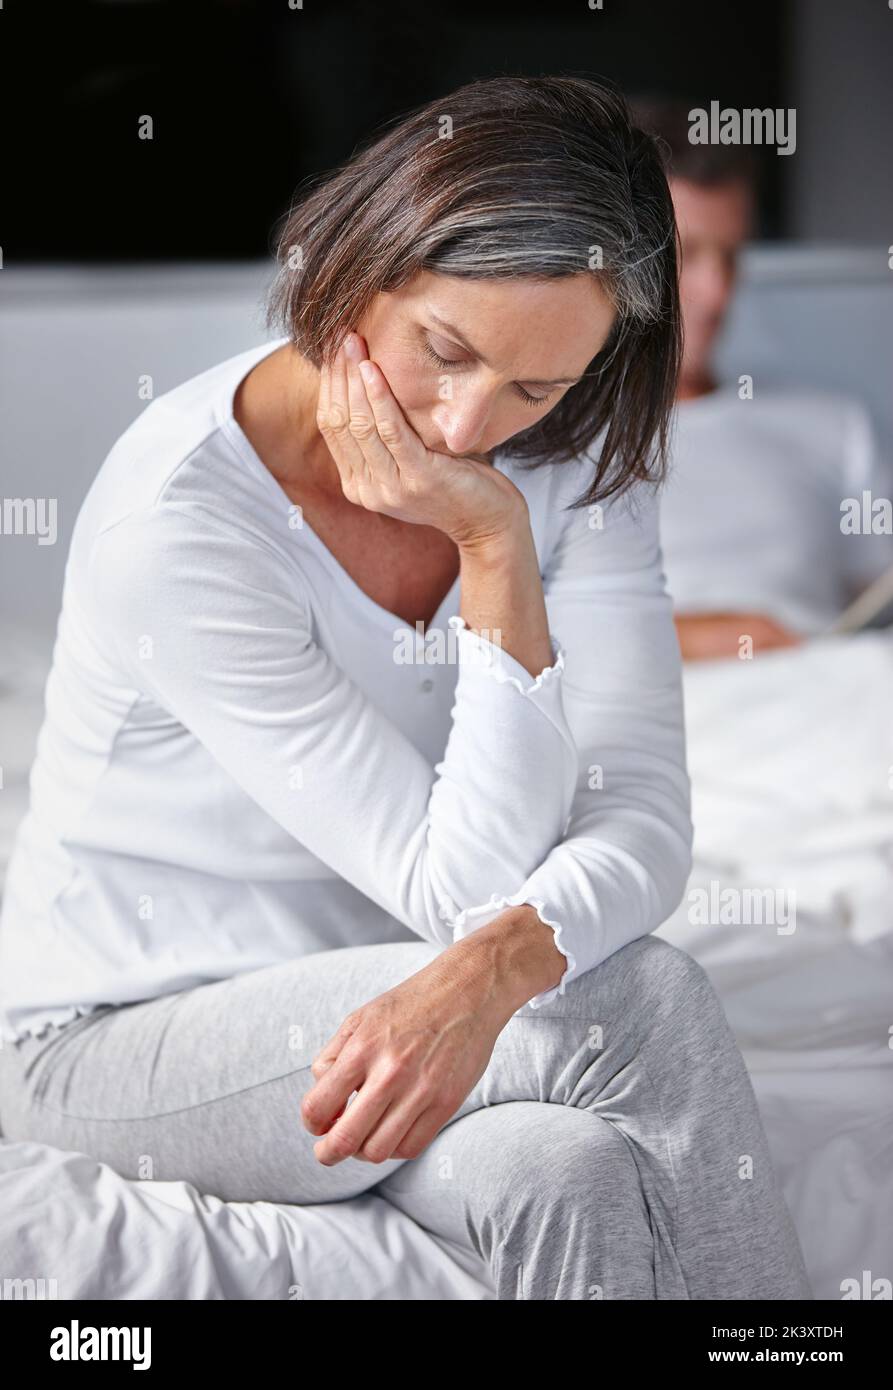 Eine reife Frau, die traurig aussieht, während sie mit ihrem Mann im Hintergrund auf ihrem Bett sitzt. Stockfoto